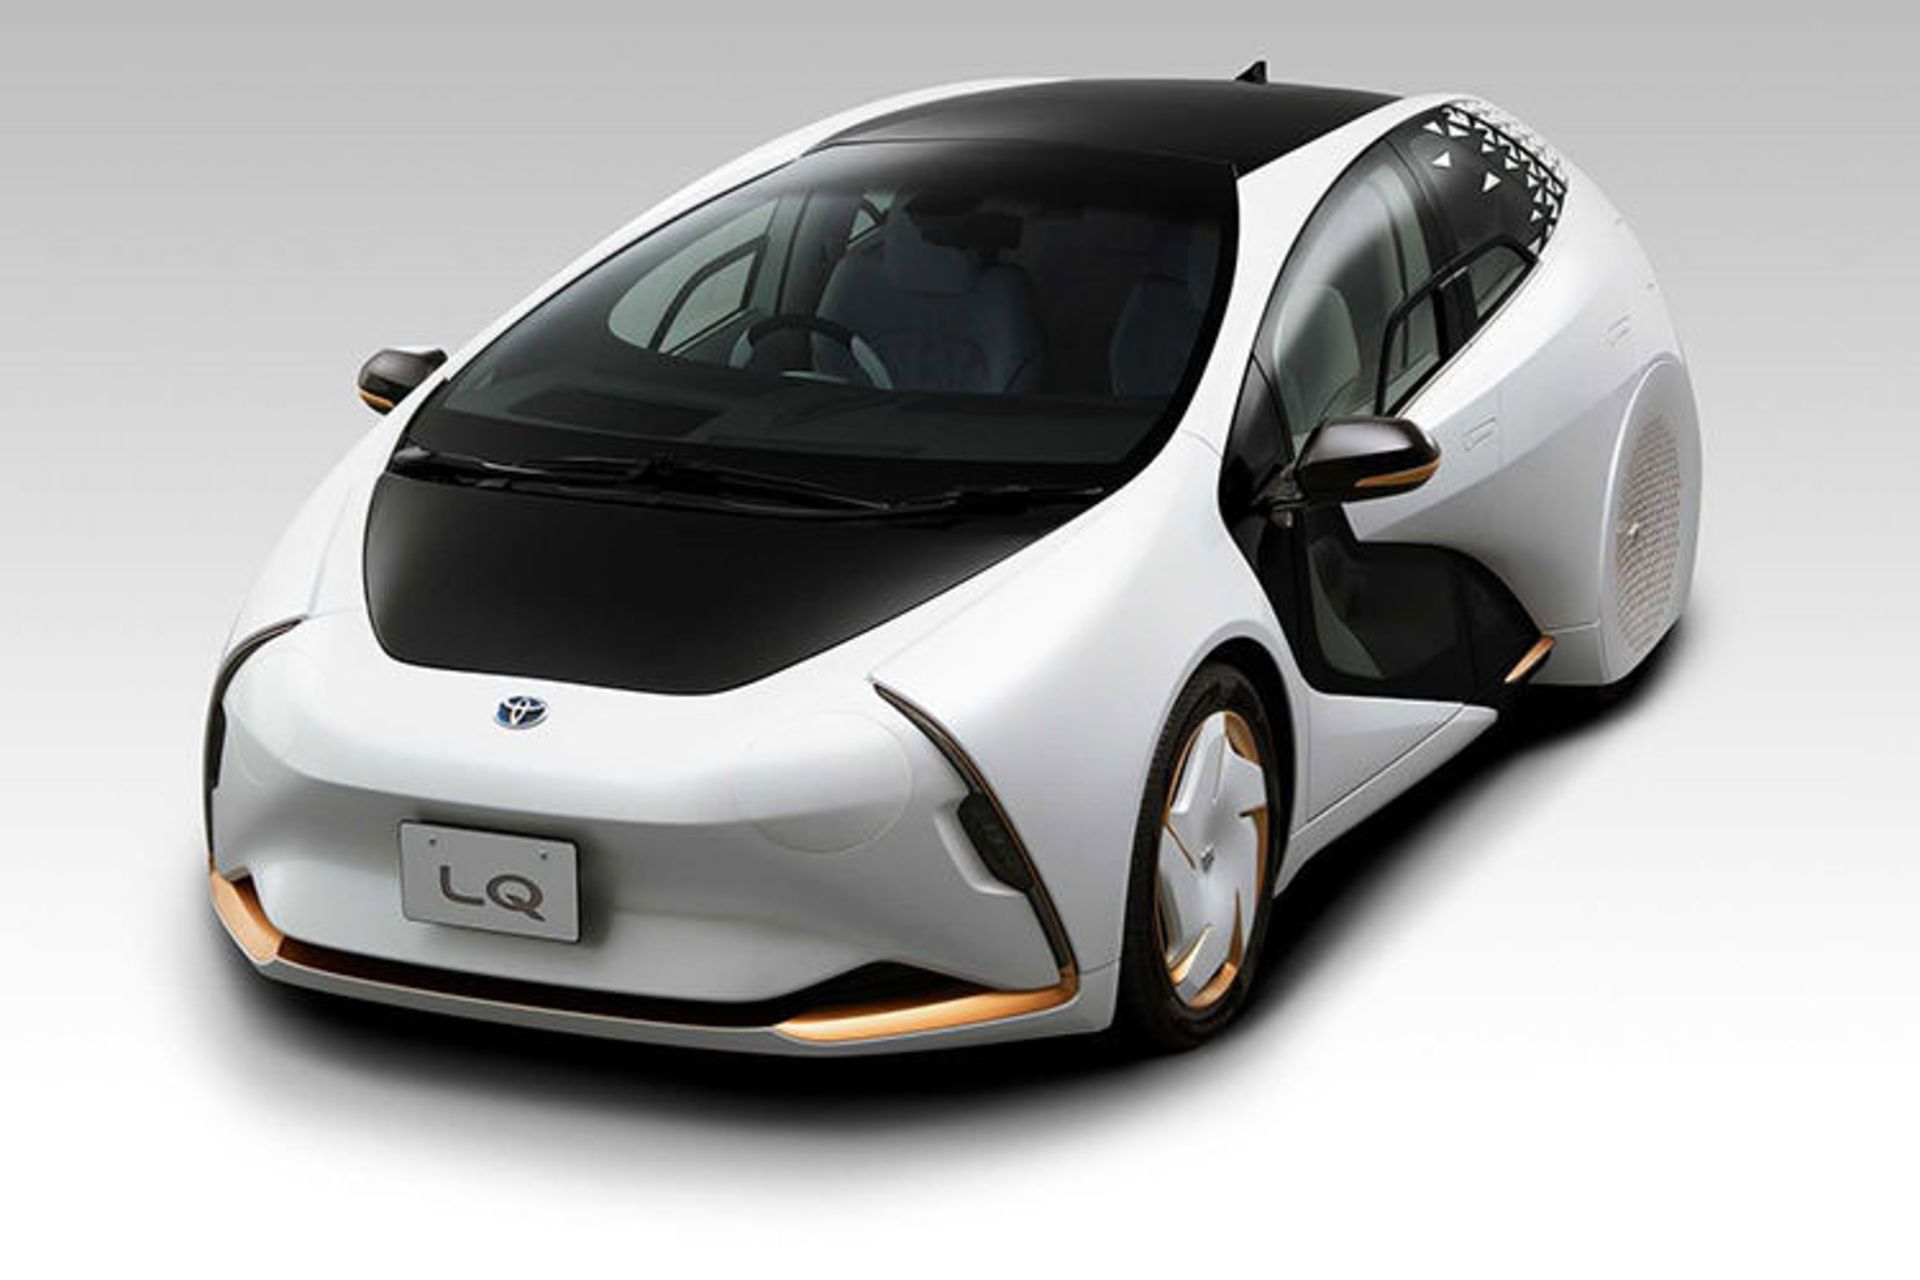 مرجع متخصصين ايران Toyota LQ concept / خودروي مفهومي خودران تويوتا ال كيو